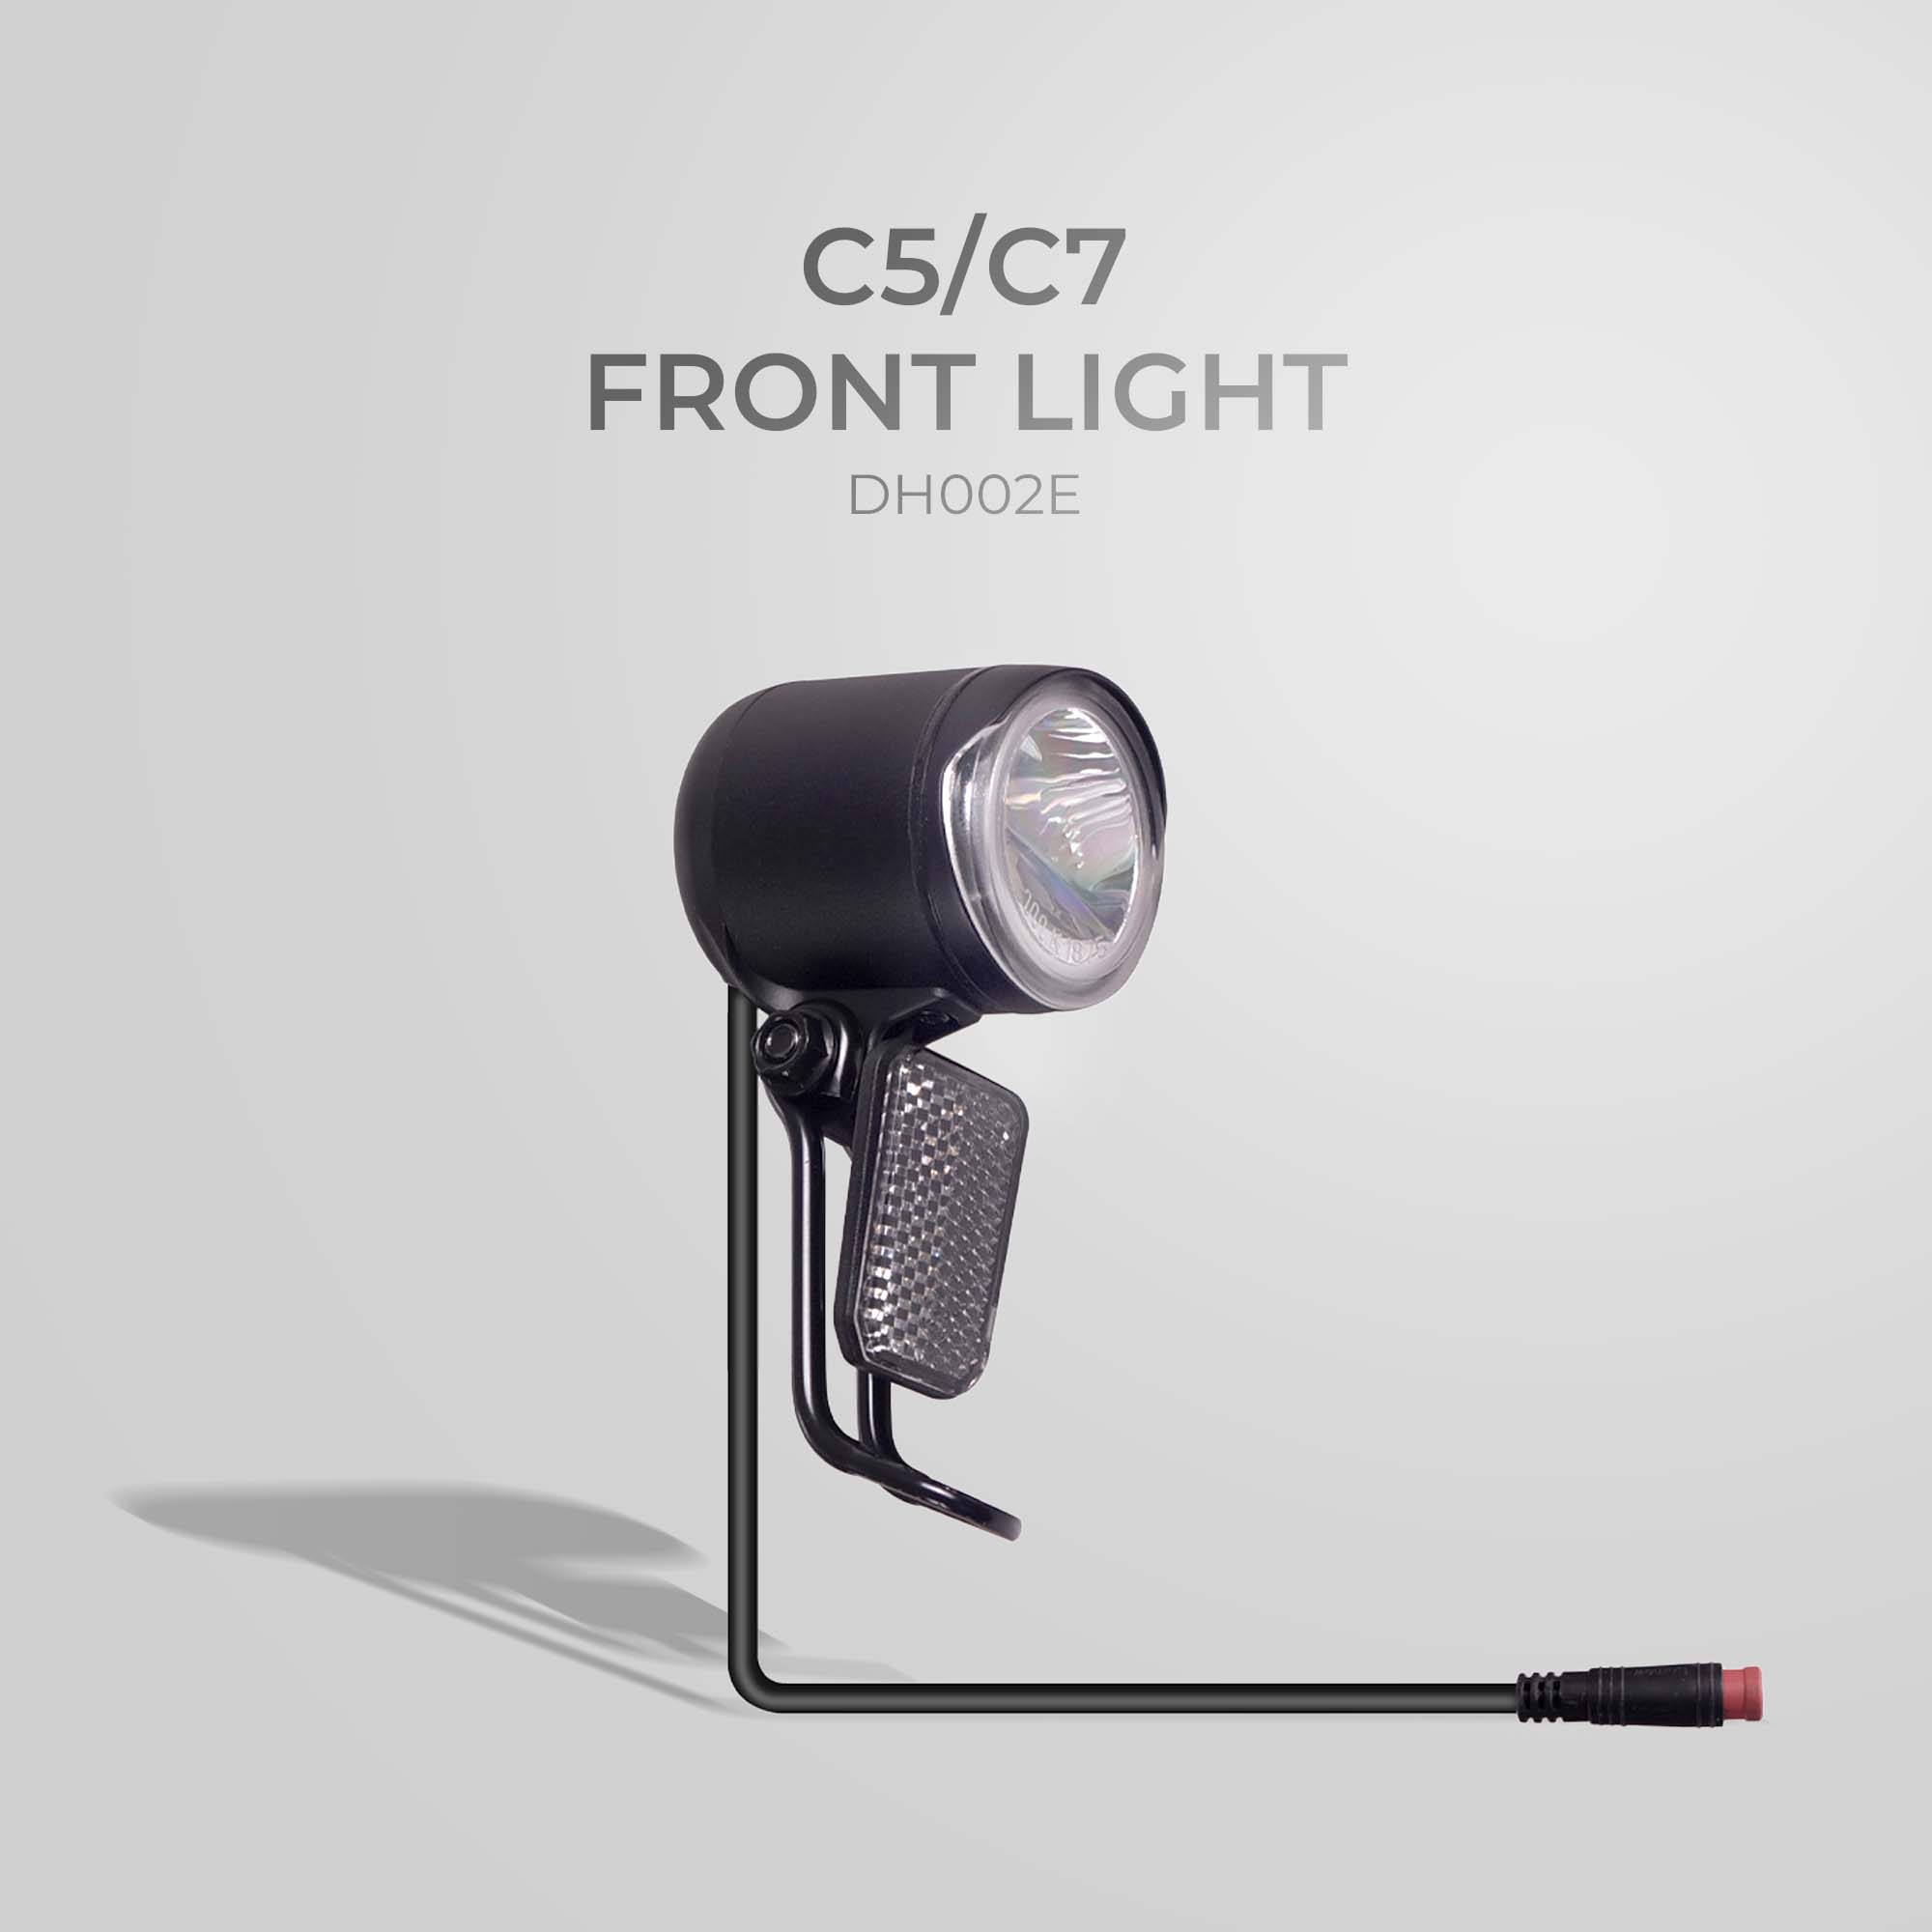 FRONT LIGHT DH002E NCM C5/C7